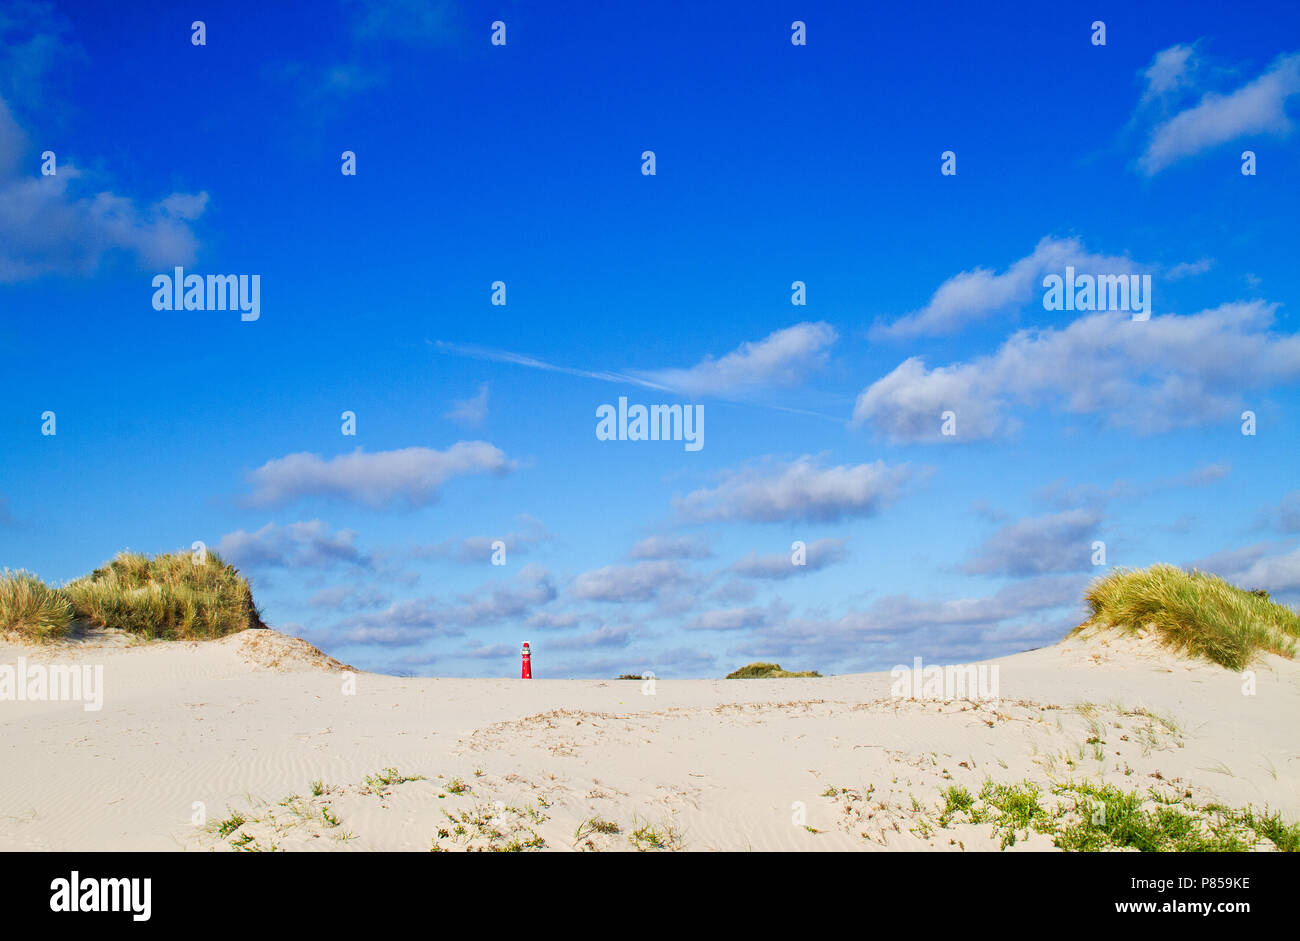 Dunes de l'île de Schiermonnikoog néerlandais, au loin le phare rouge, sous un ciel bleu avec quelques nuages Banque D'Images